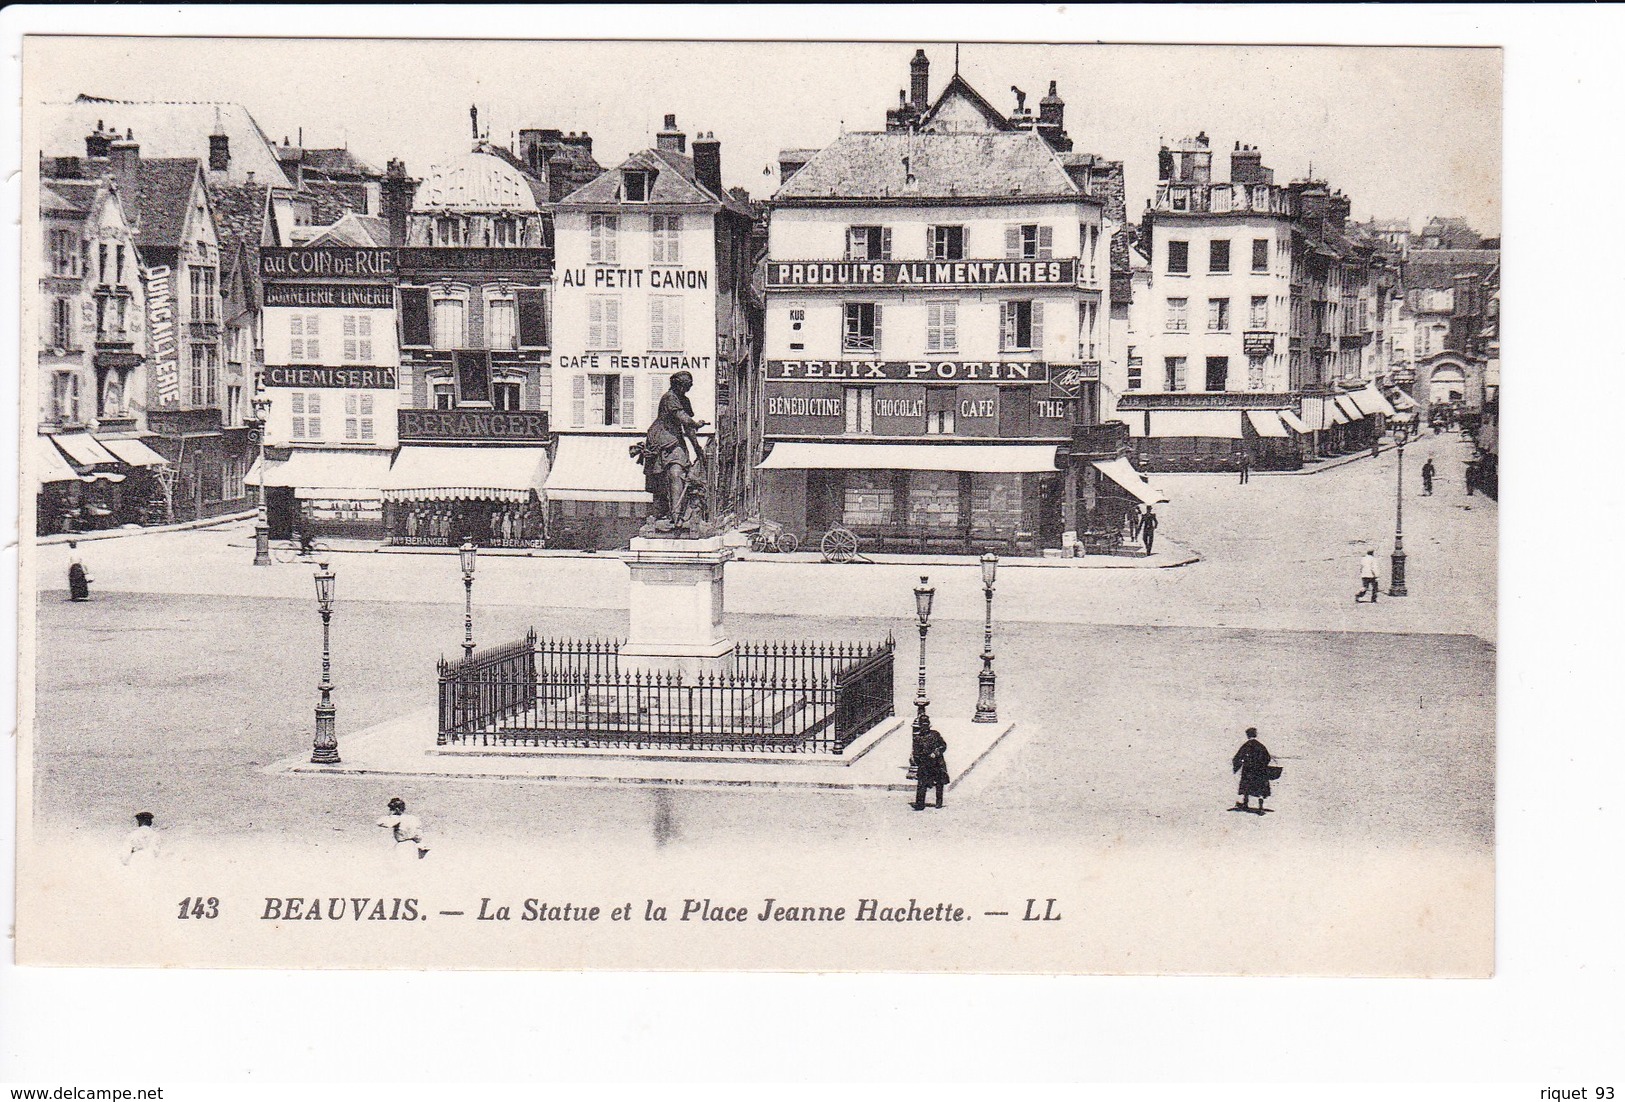 143 - BEAUVAIS - La Statue Et La Place Jeanne Hachette. - LL - Beauvais